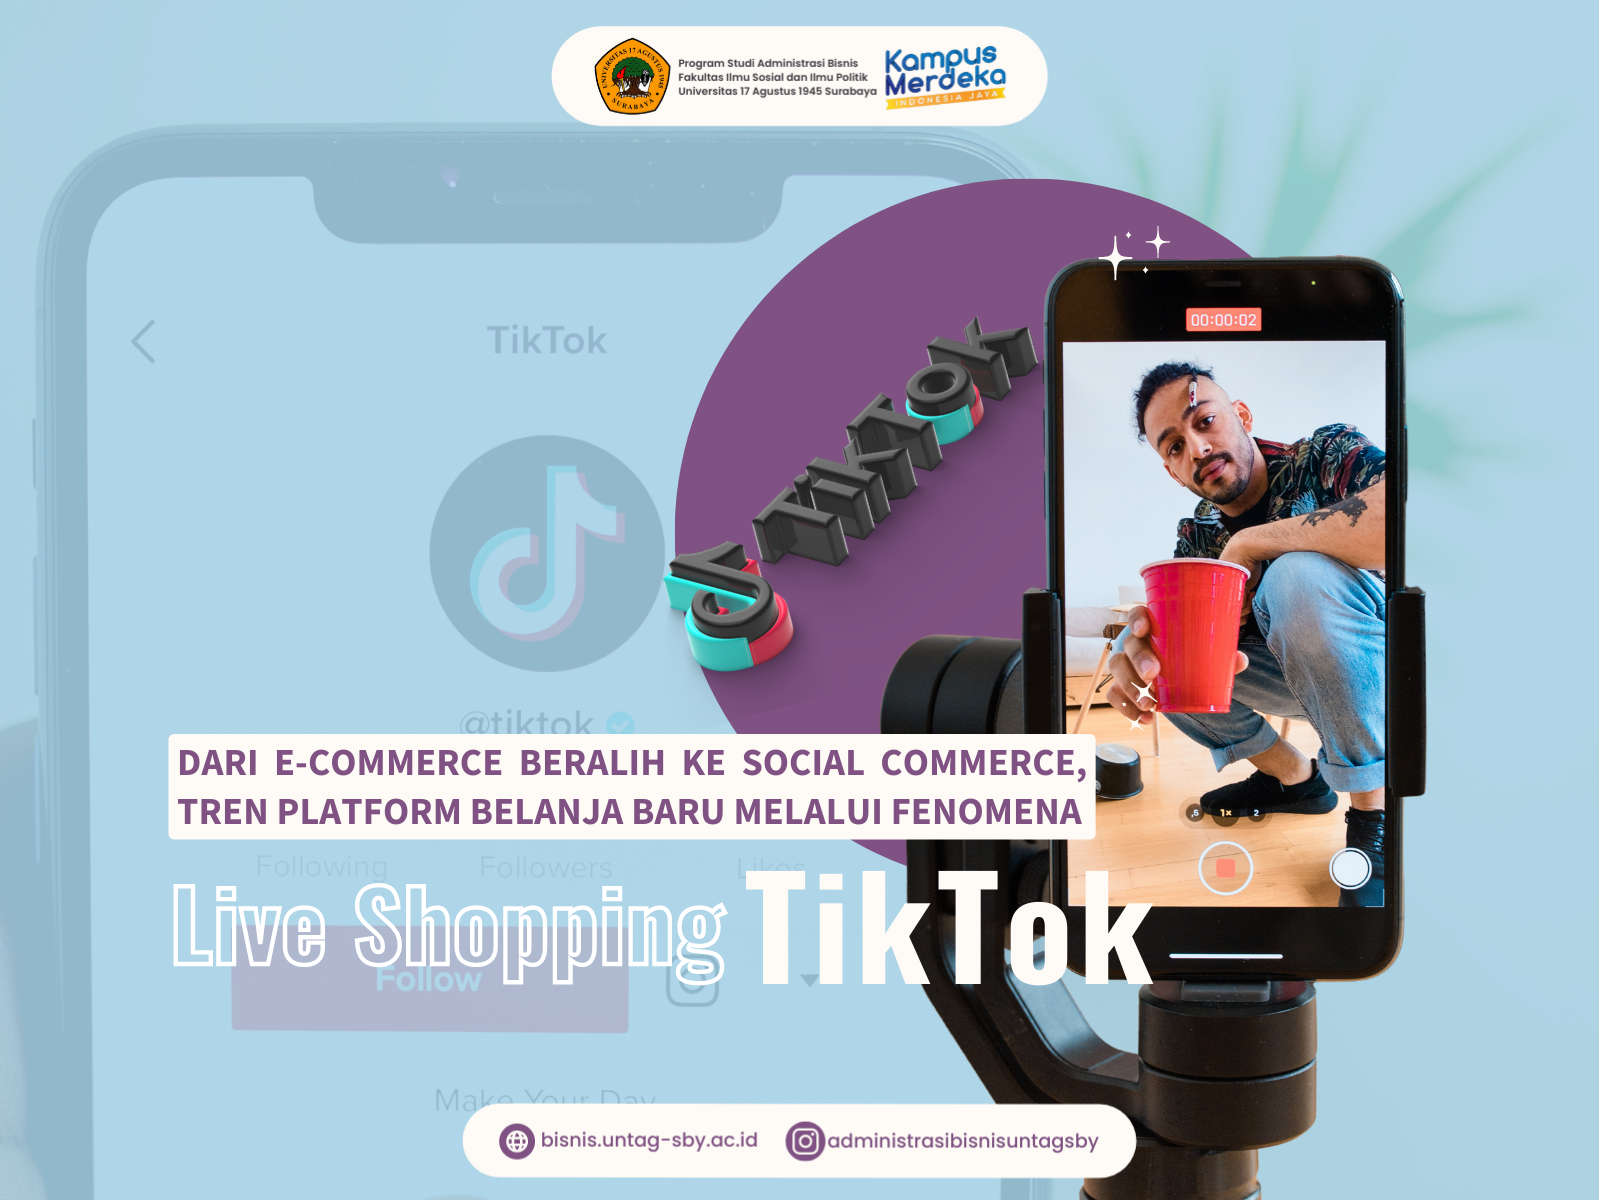 Dari e-Commerce Beralih ke Social Commerce, Tren Belanja Baru Melalui Fenomena Live Shopping